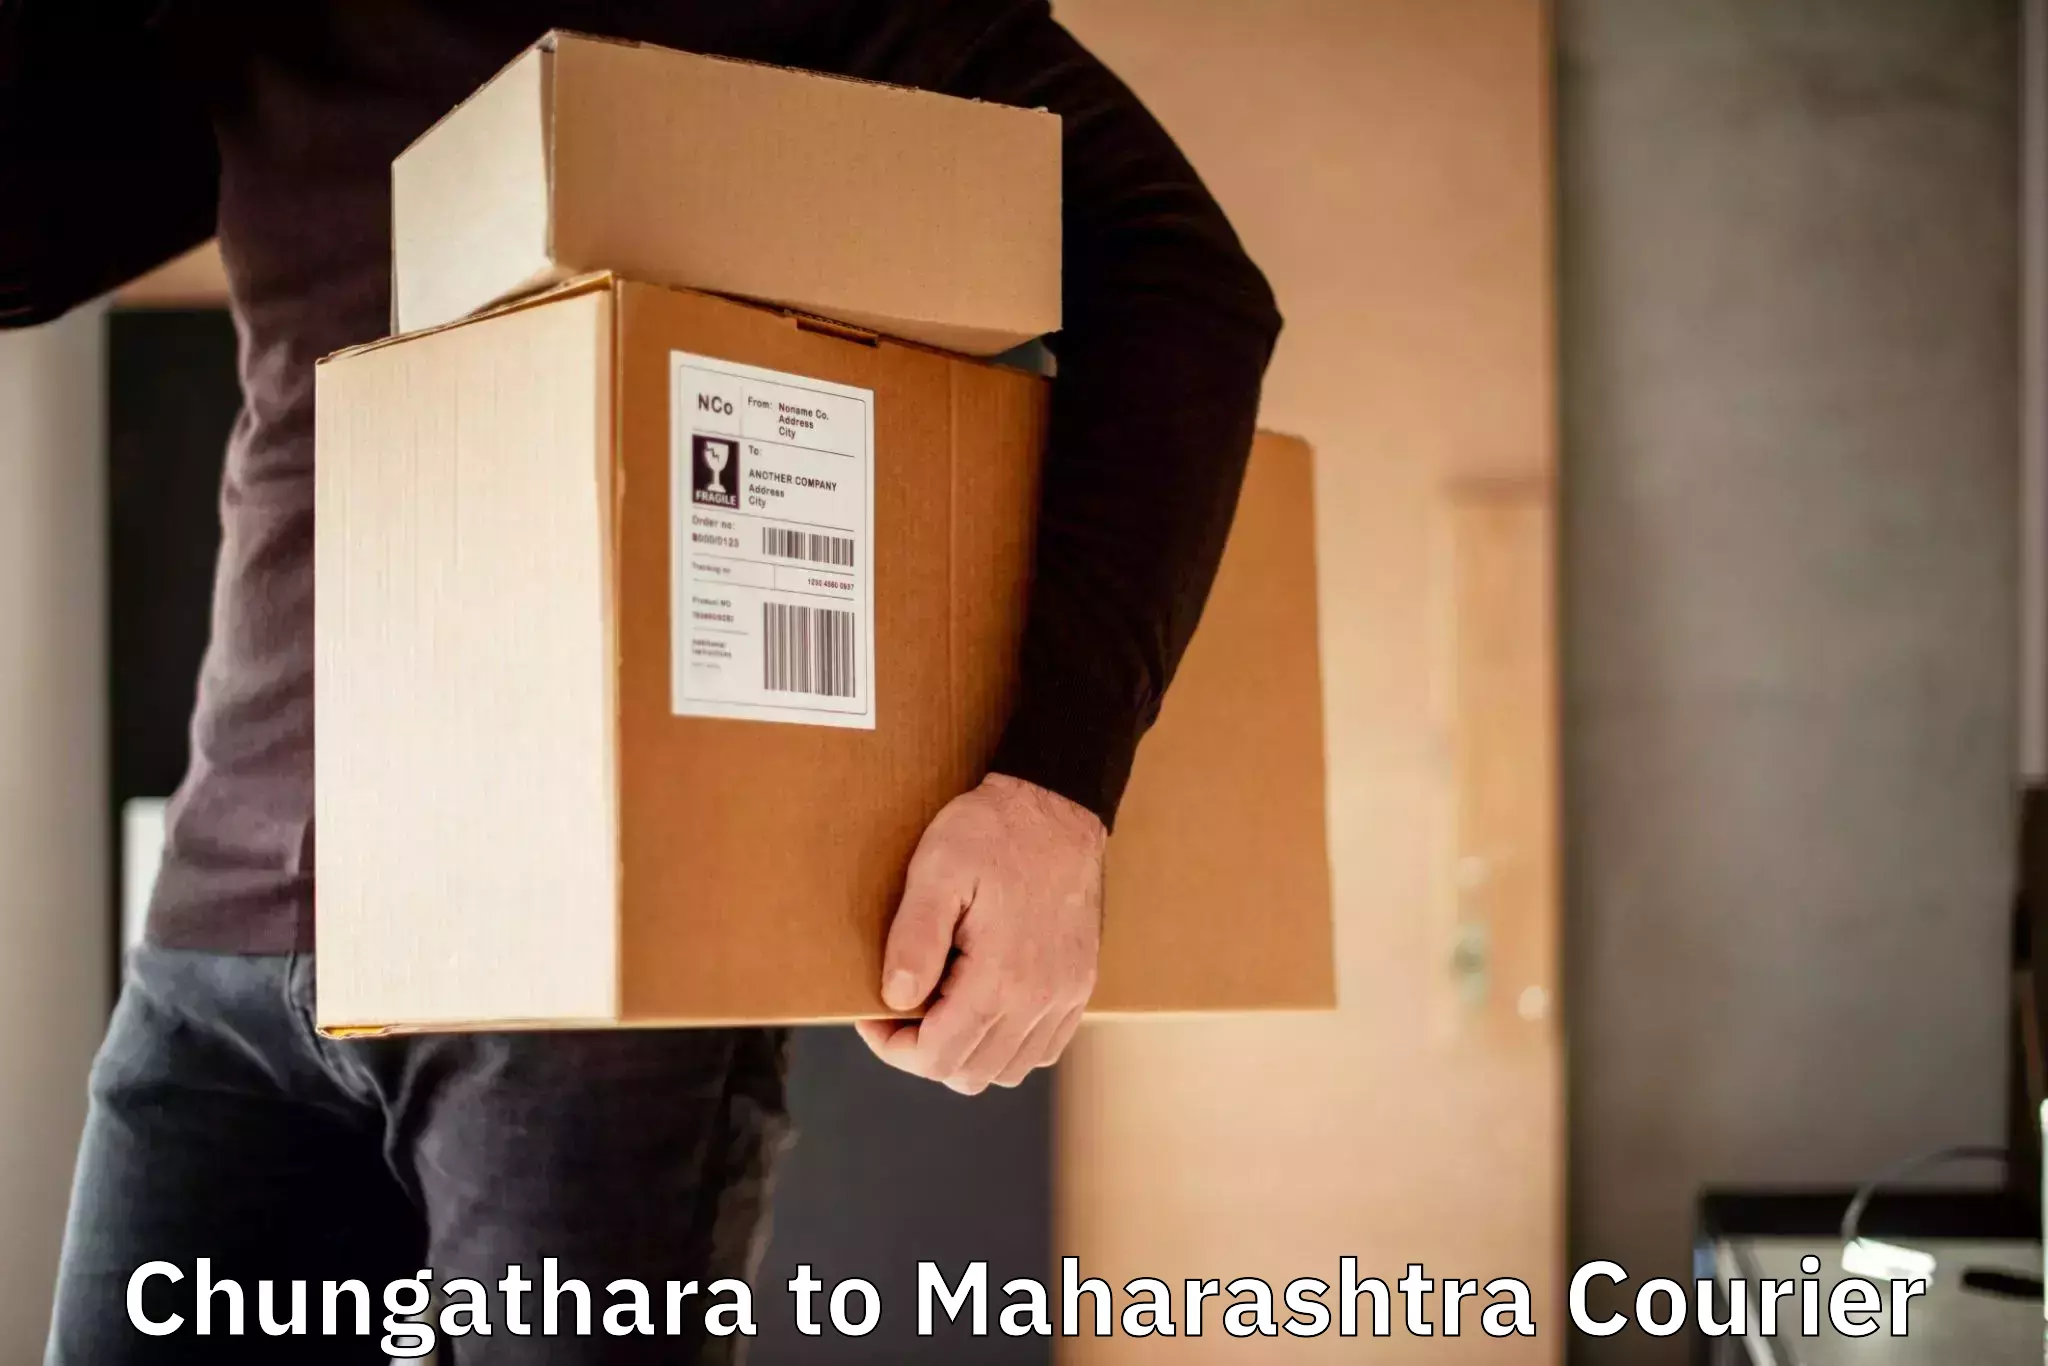 Express package handling Chungathara to Walchandnagar